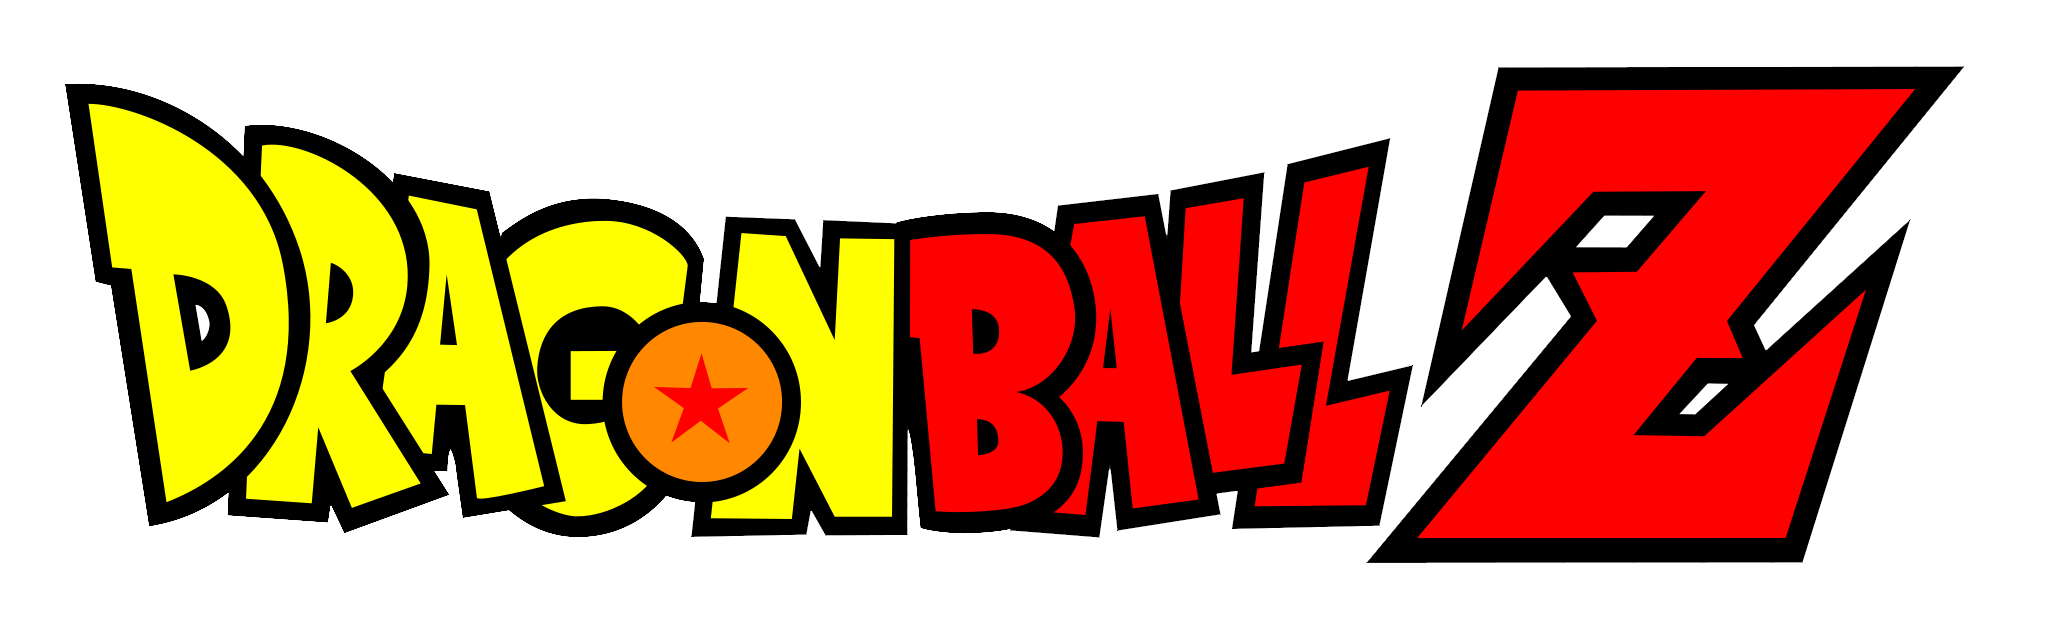 Dragon Ball Z Logo - Dragon Ball Z Logo 2 image - Mod DB